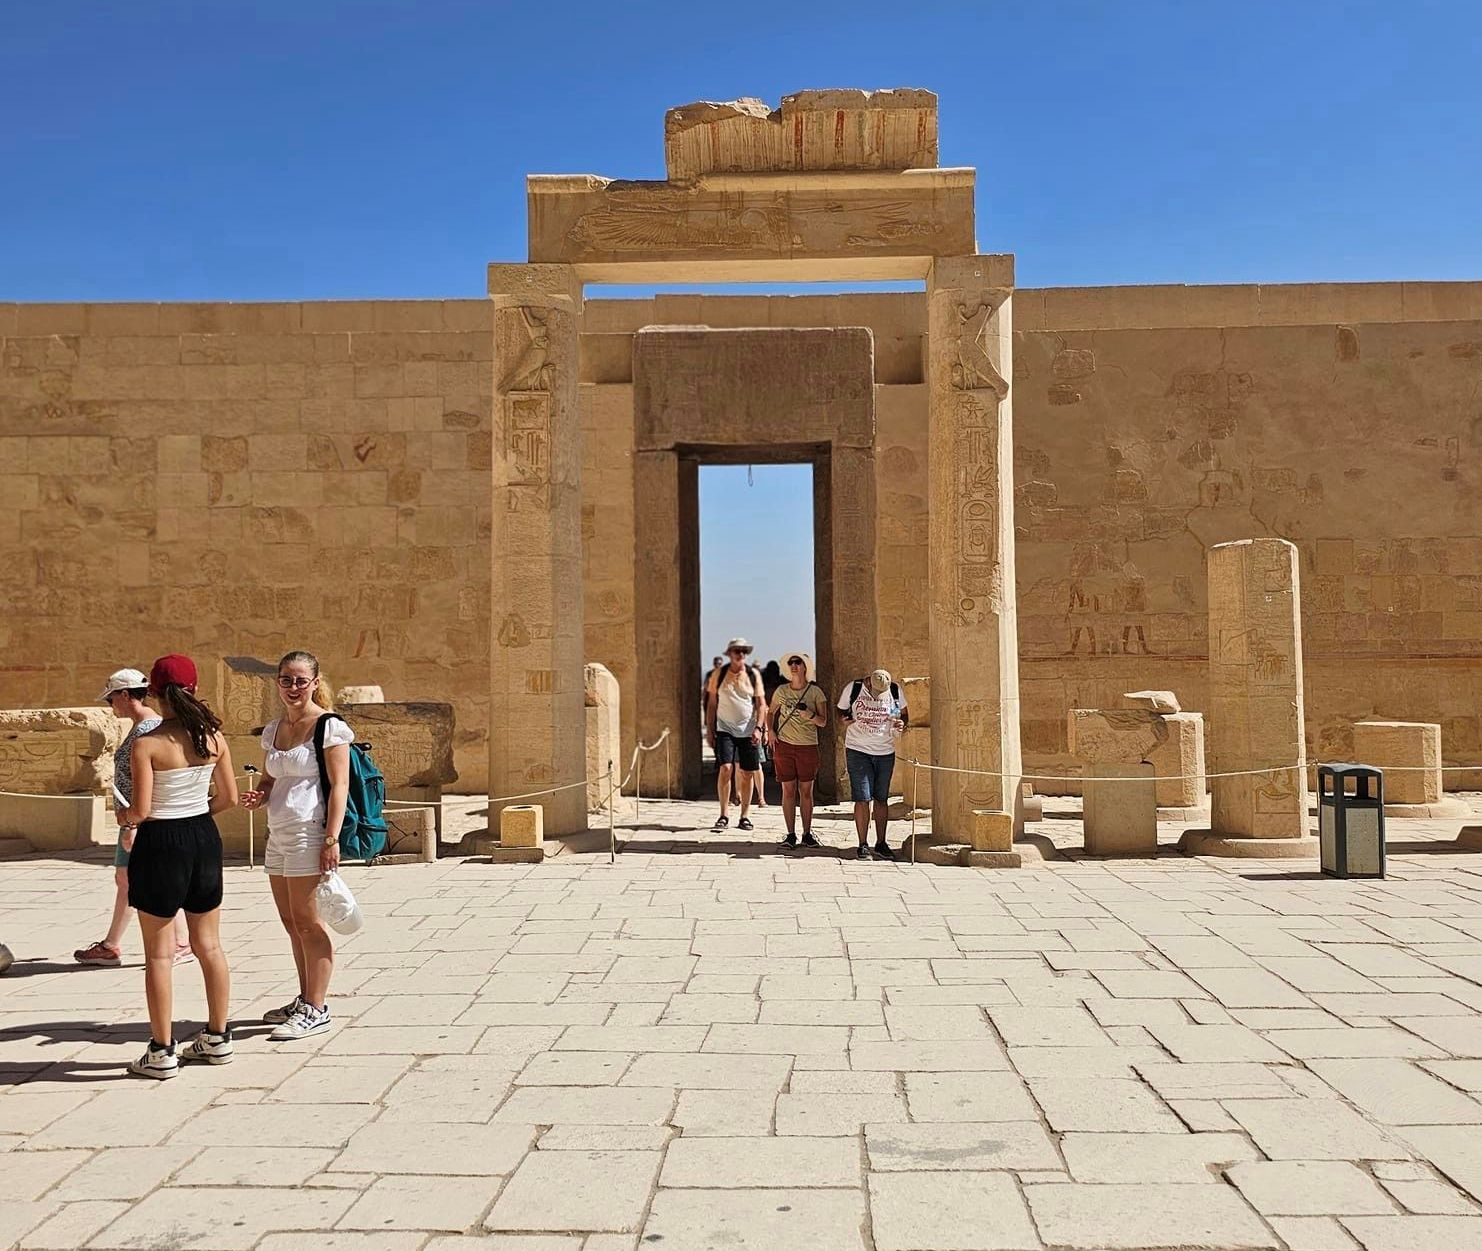 السياح يستمتعون بزيارة معبد الملكة حتشبسوت